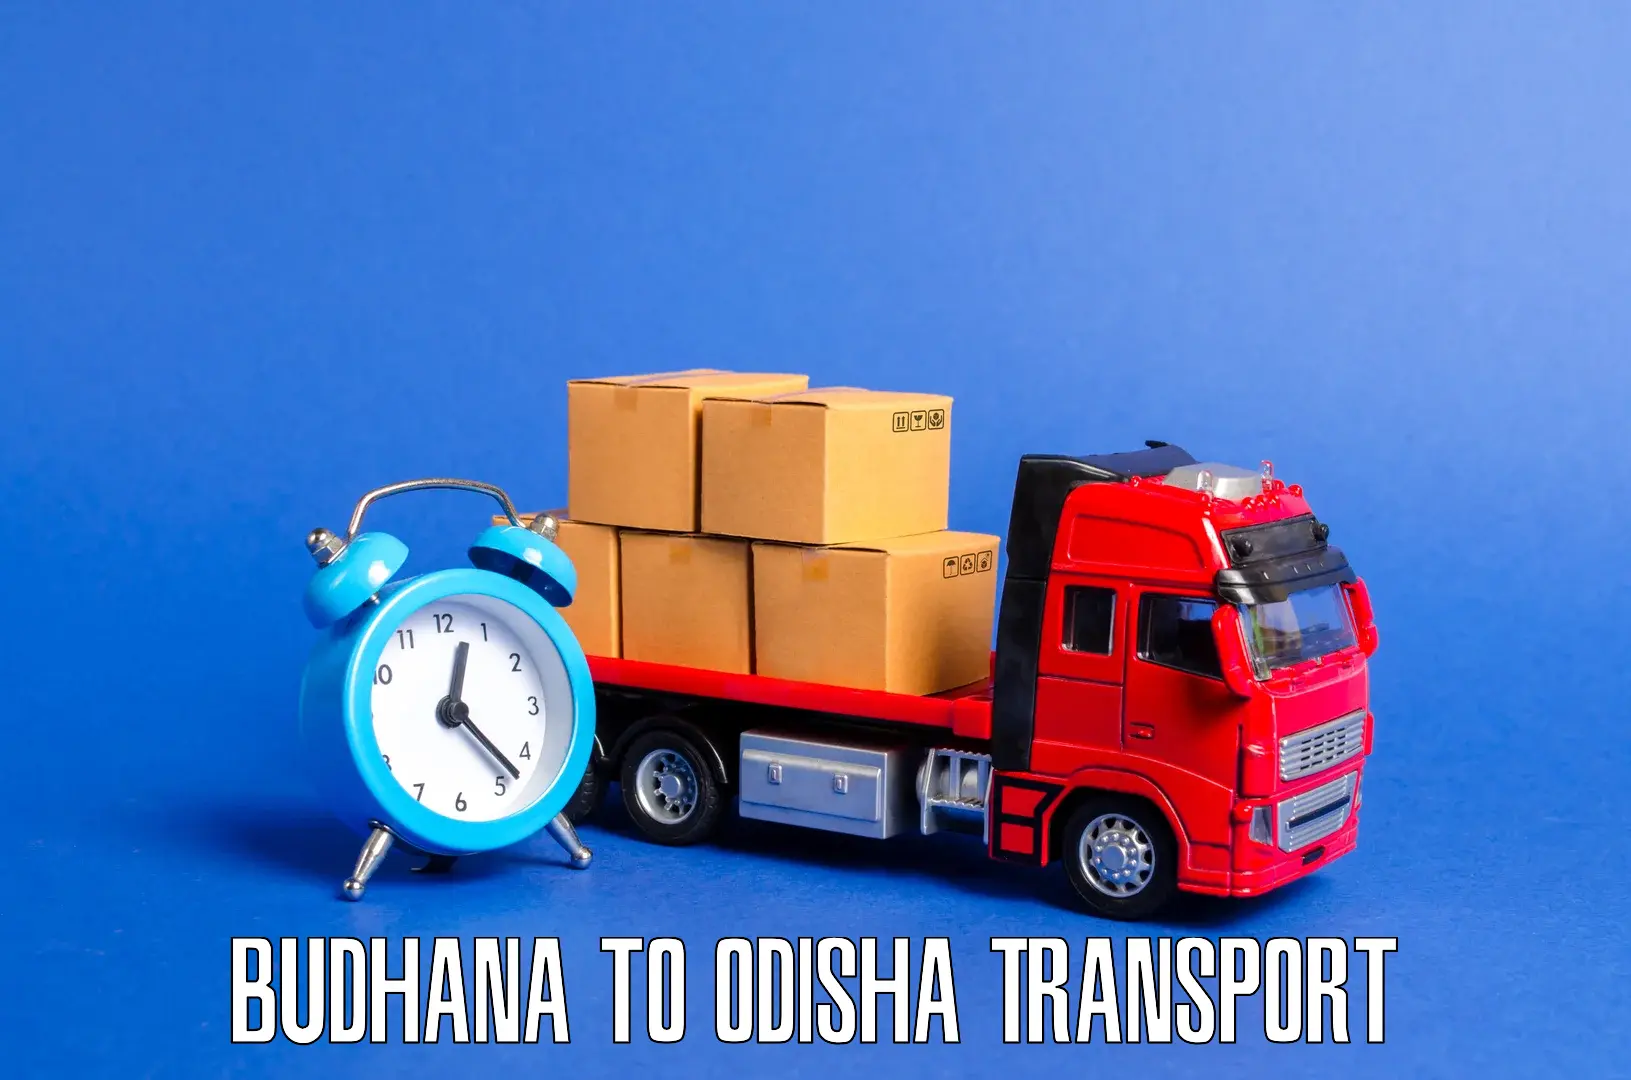 Transportation services Budhana to Mohana